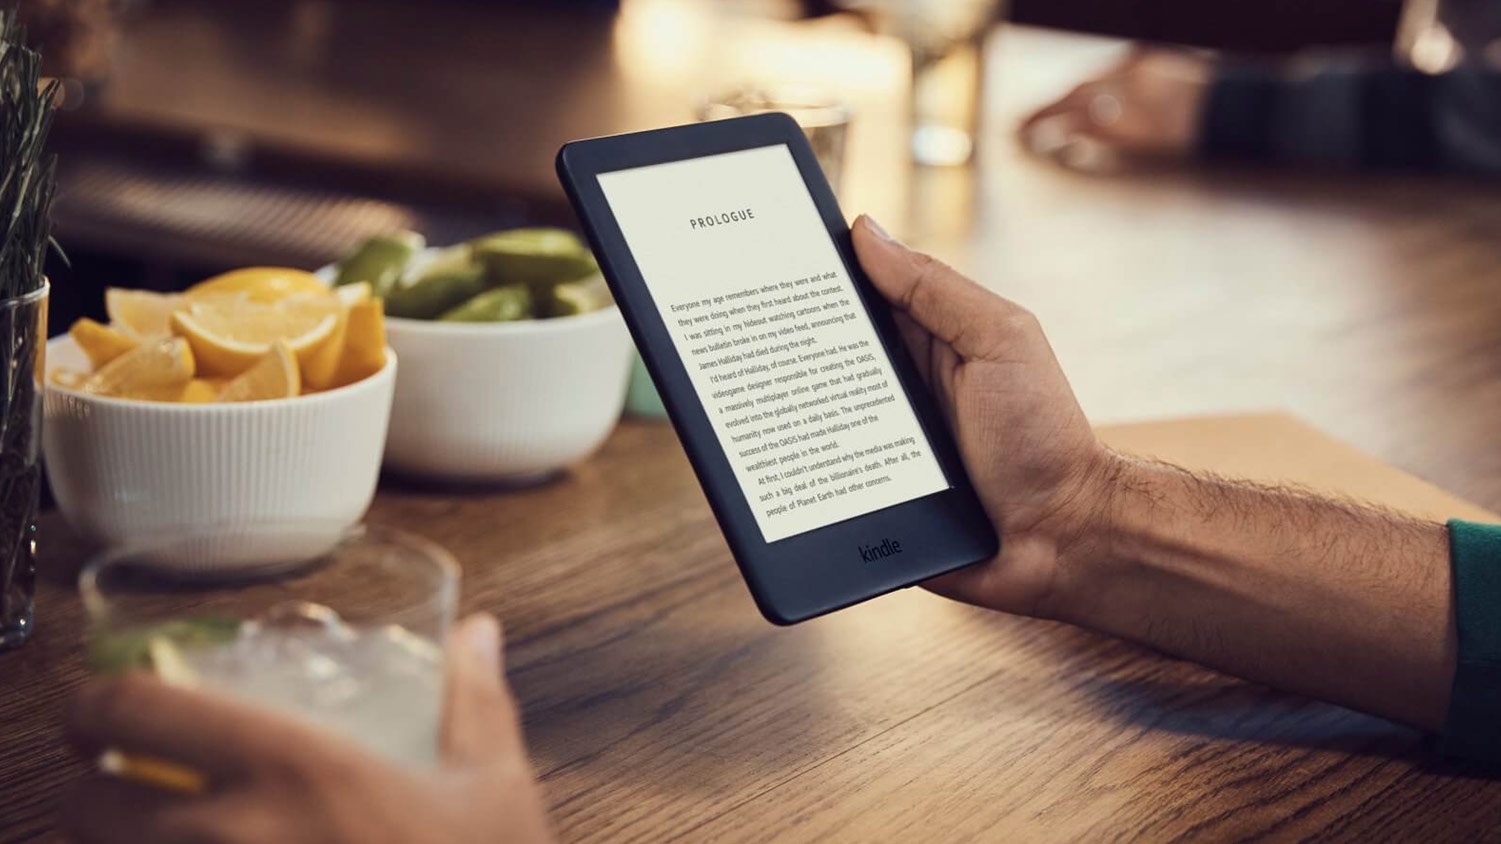 formatos de libros son compatibles Kindle cómo convertirlos? | Tecnología - ComputerHoy.com